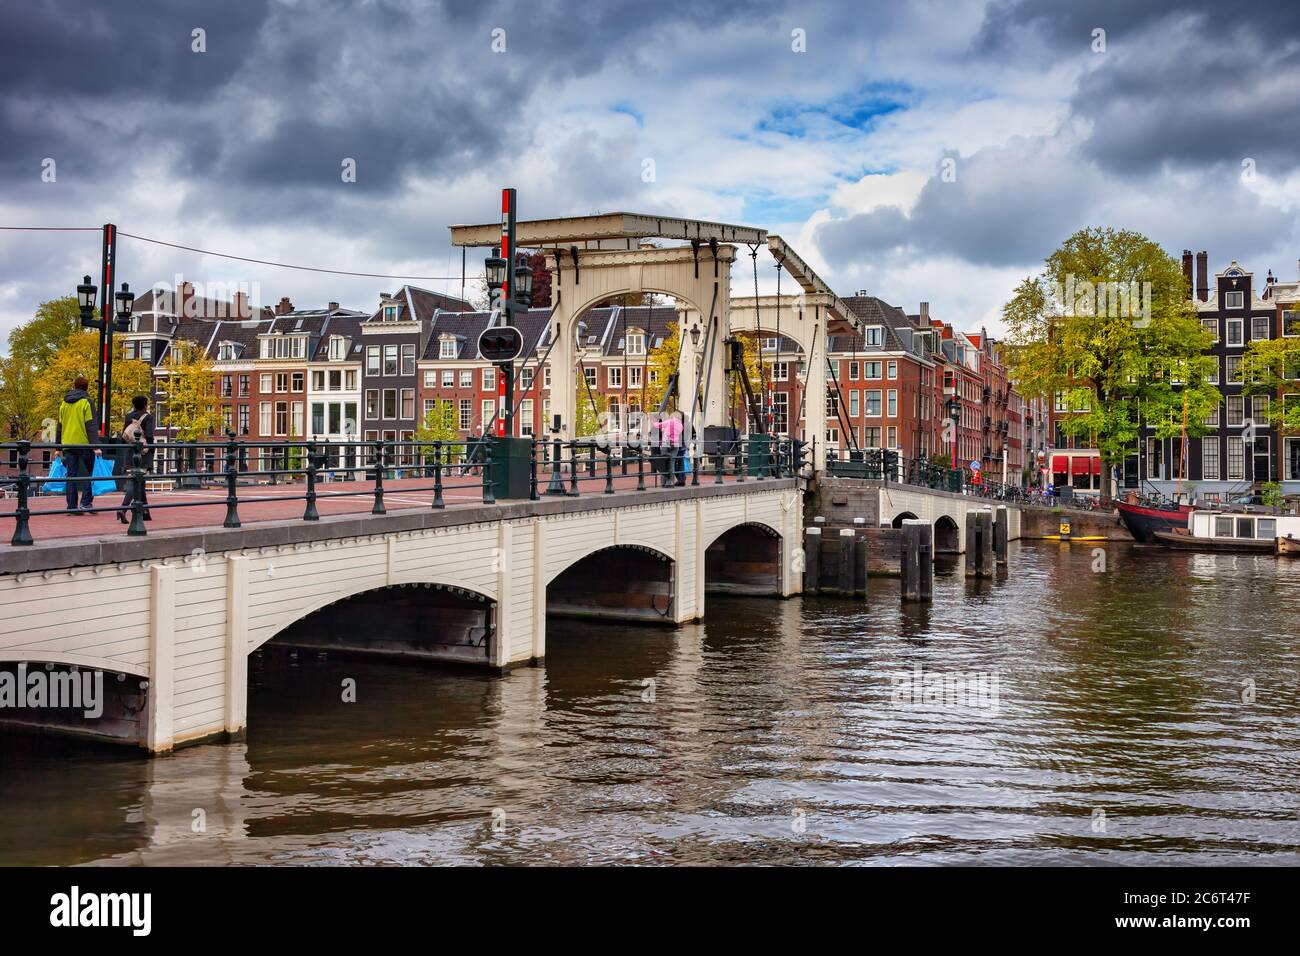 Skinny Bridge (néerlandais : Magere Brug) sur la rivière Amstel dans la ville d'Amsterdam, Hollande, pays-Bas Banque D'Images